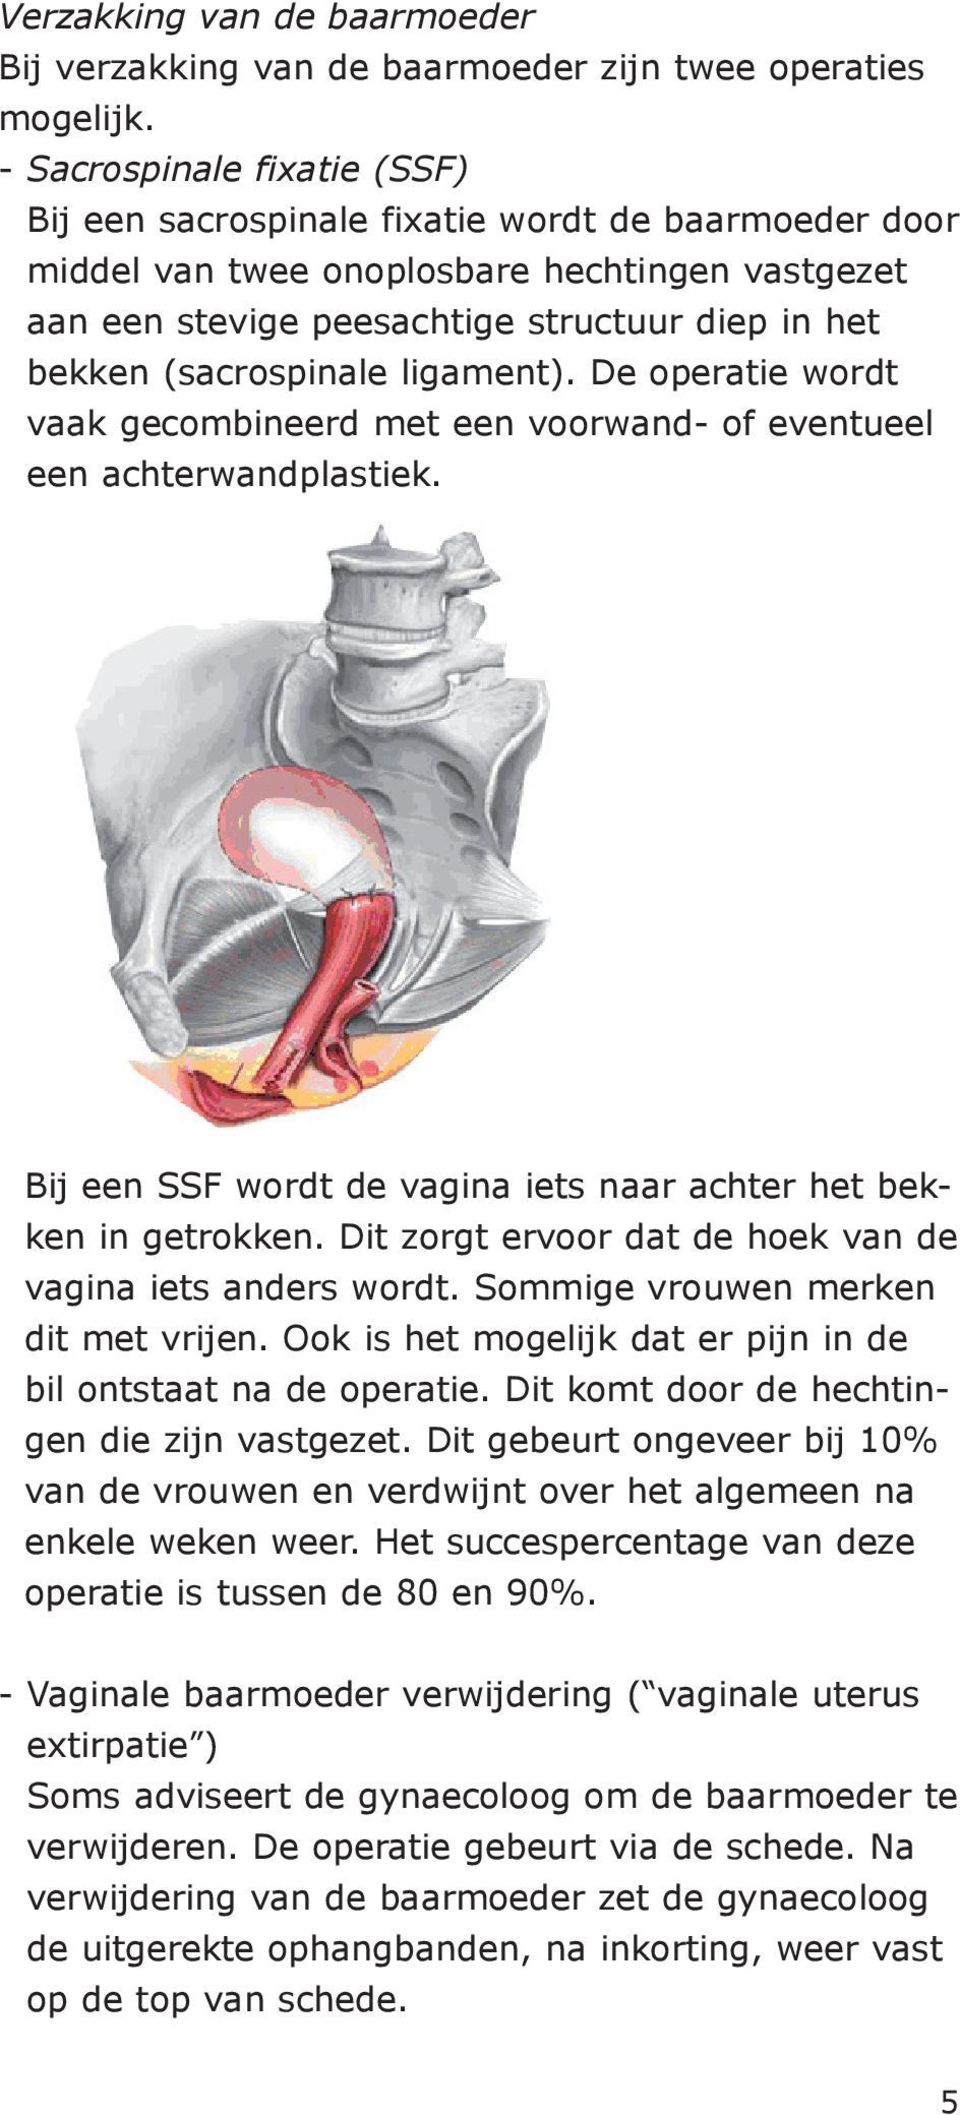 (sacrospinale ligament). De operatie wordt vaak gecombineerd met een voorwand- of eventueel een achterwandplastiek. Bij een SSF wordt de vagina iets naar achter het bekken in getrokken.